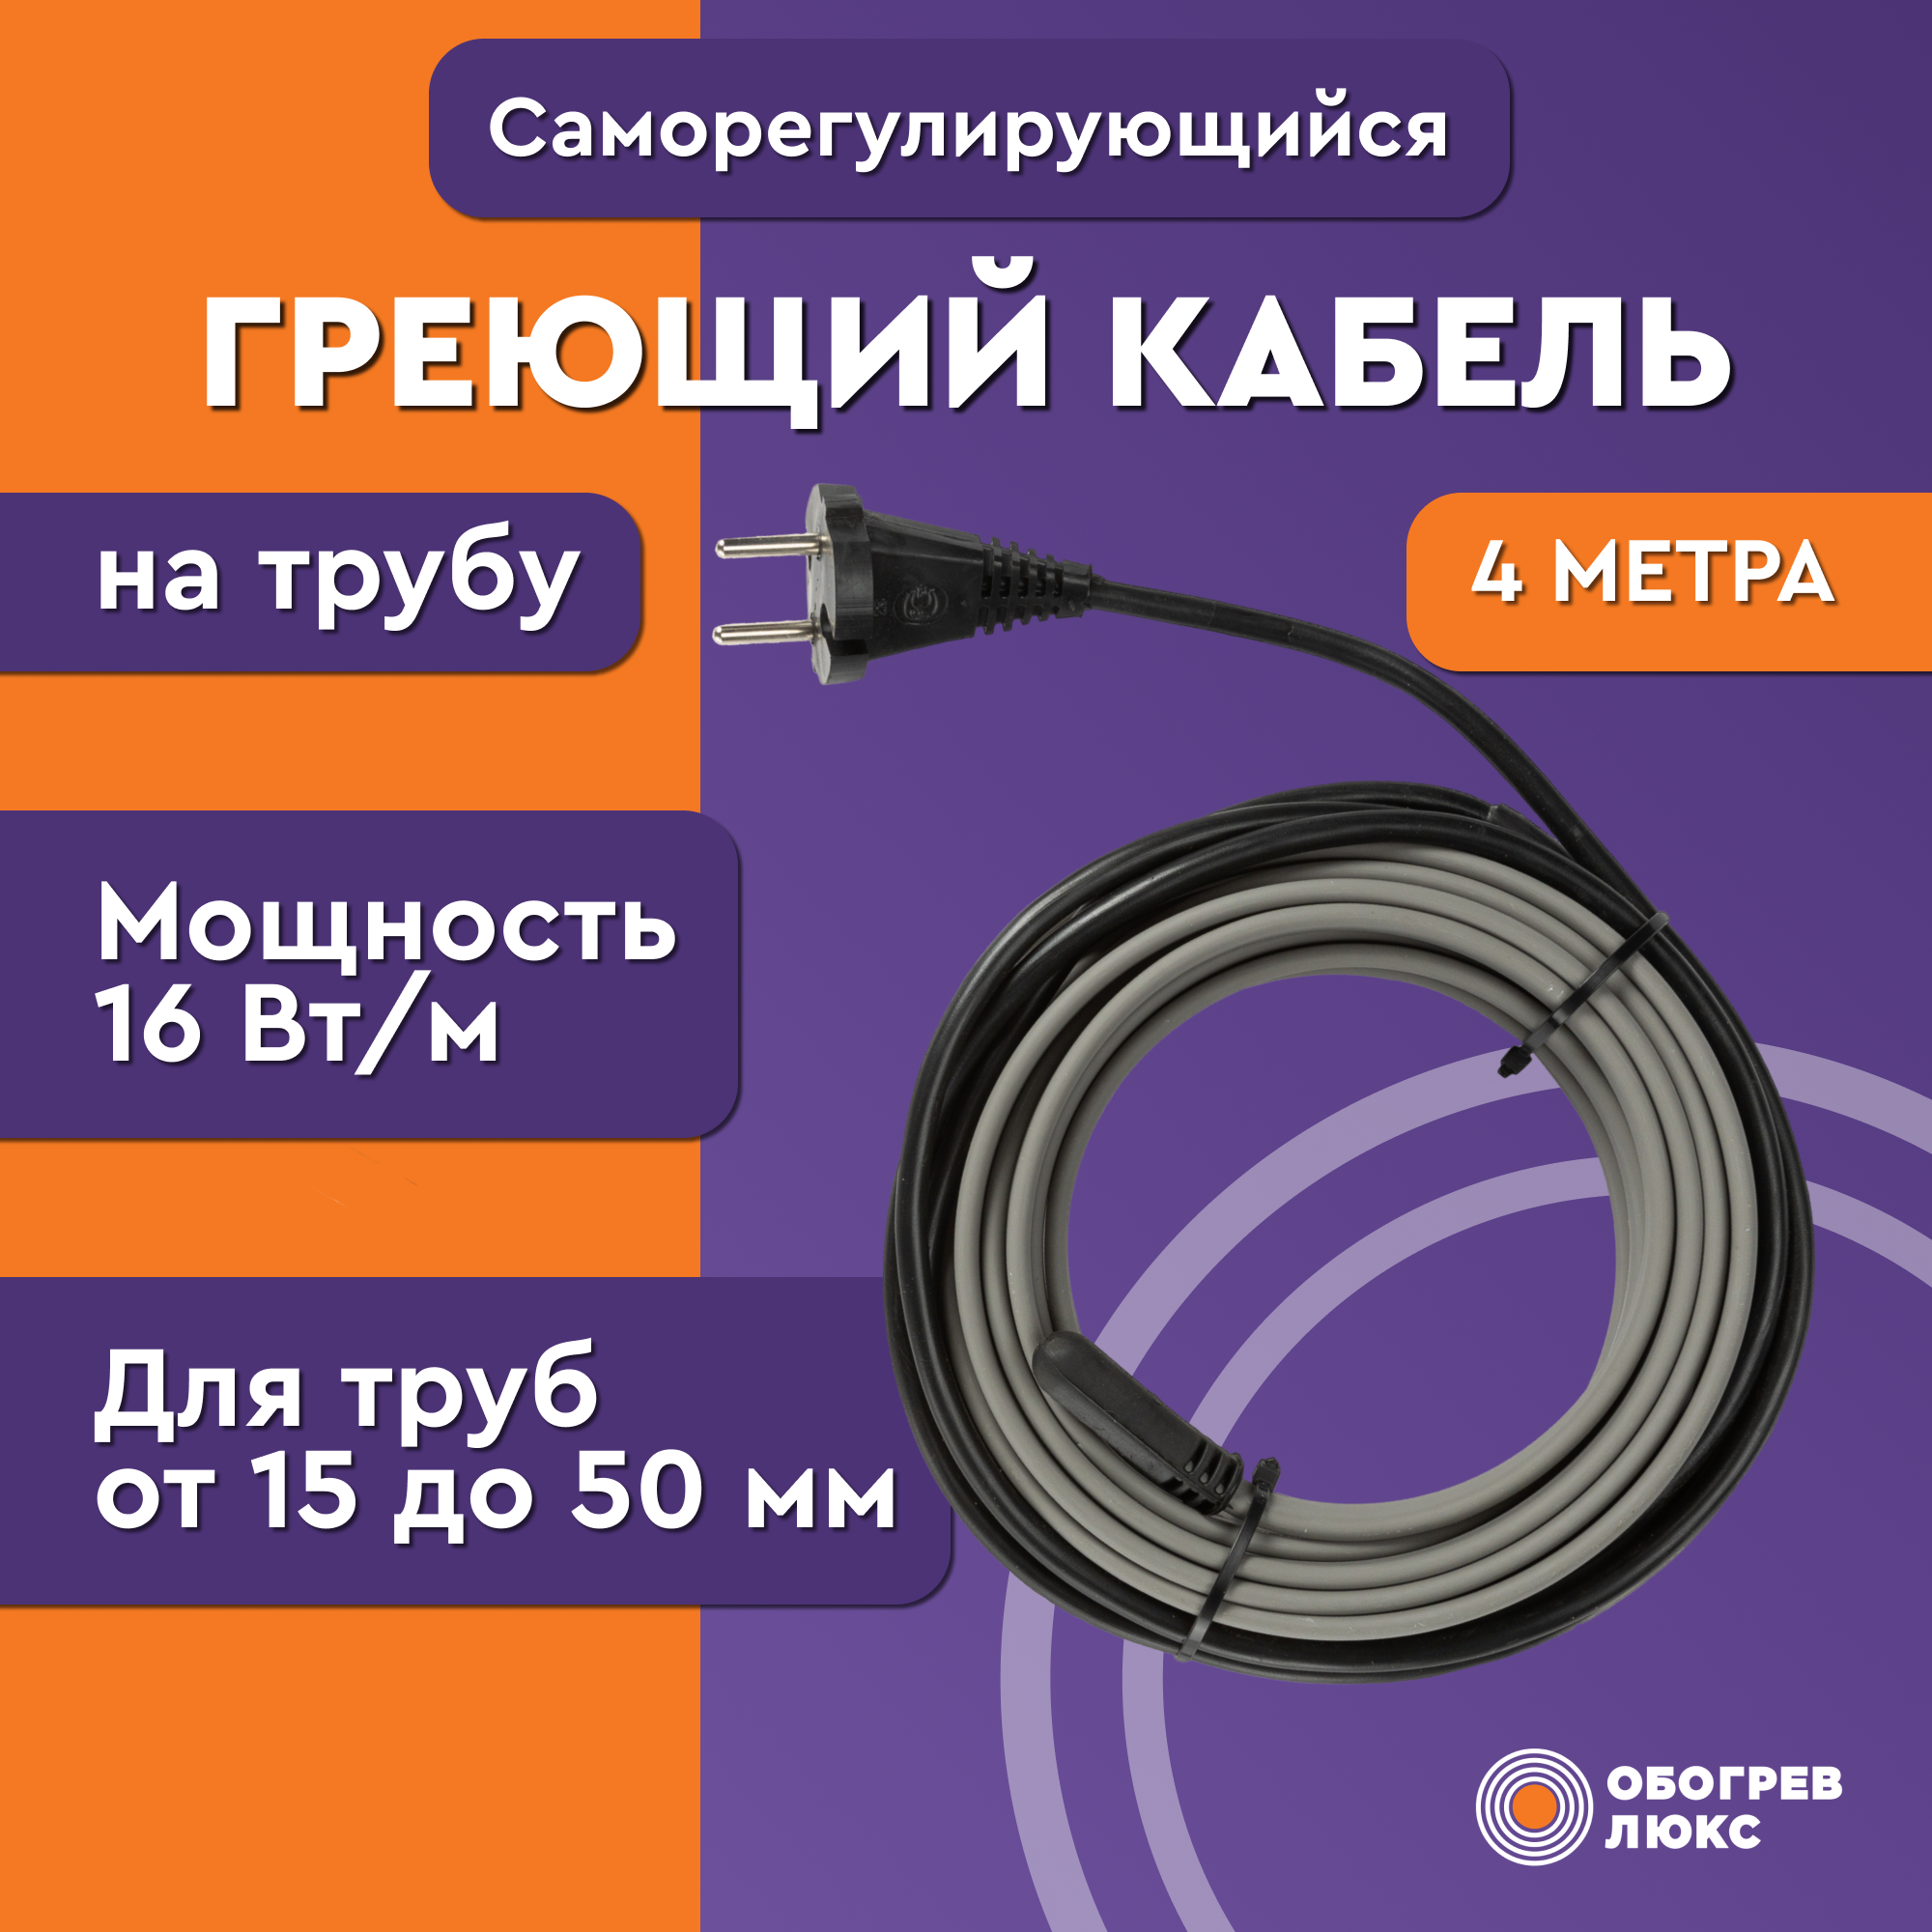 Греющий кабель Lite на трубу 4м 64Вт